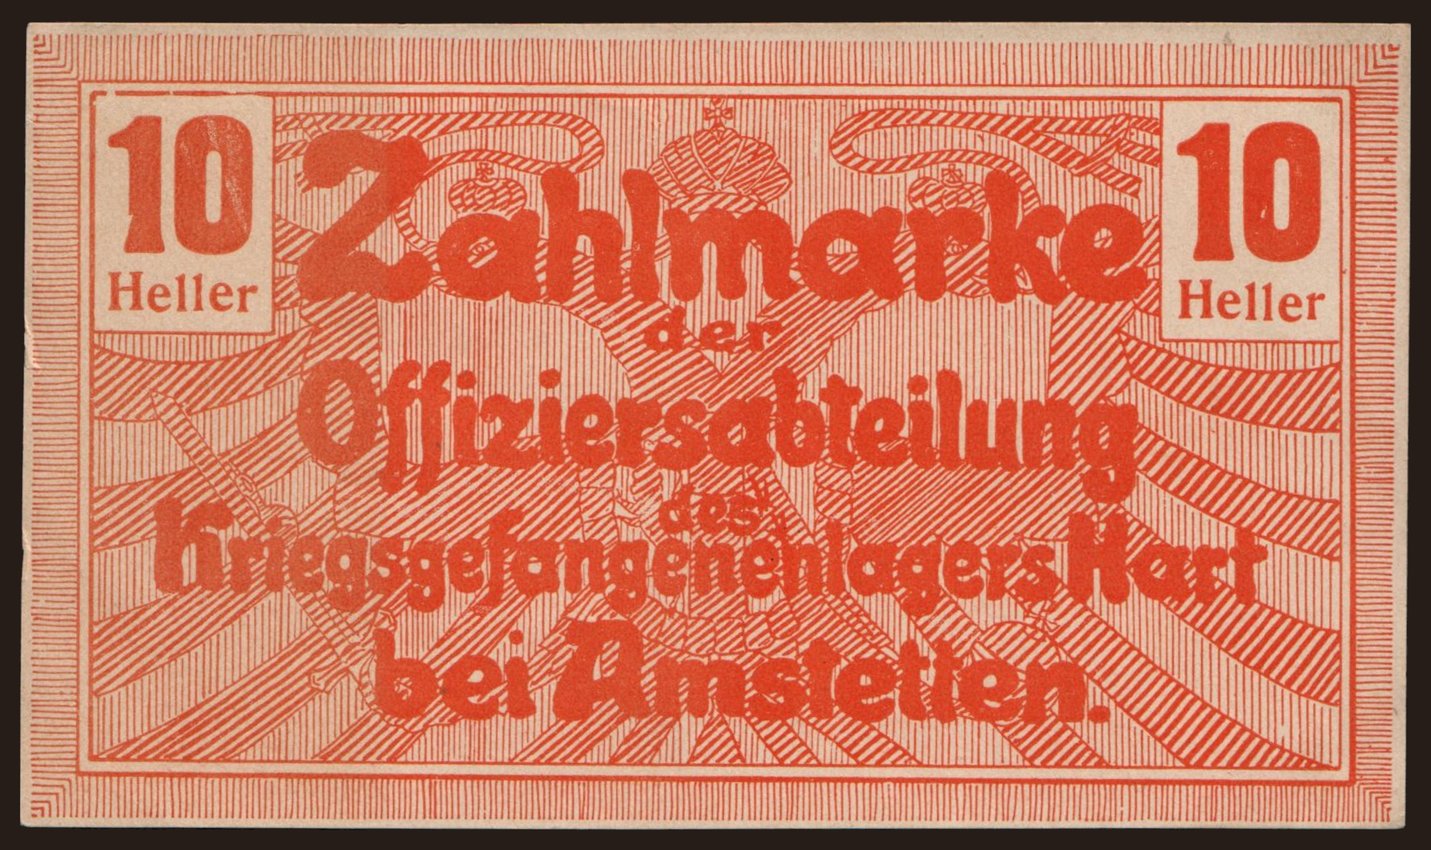 Harth bei Amstetten, 10 Heller, 1916